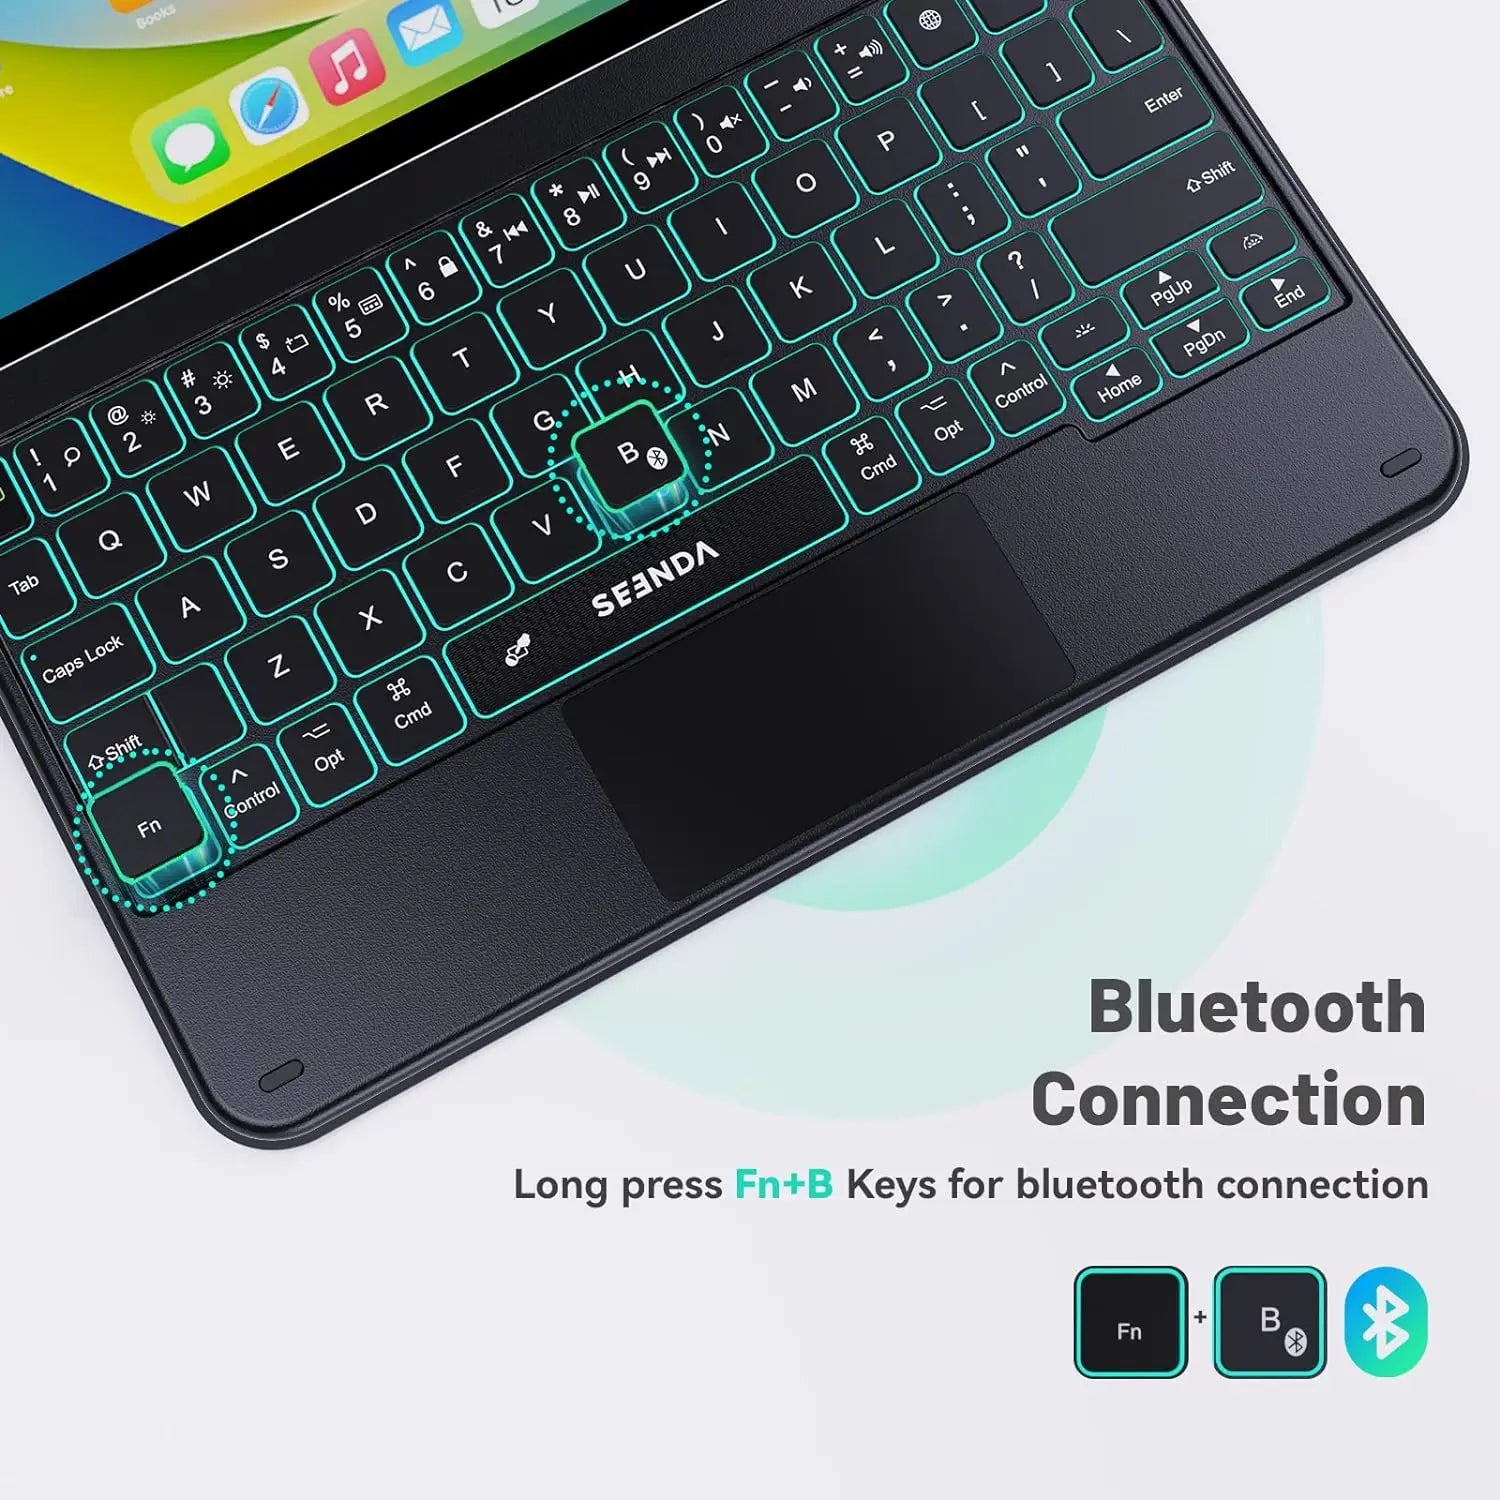 k11 7-Color Backlit Keyboard Case for iPad